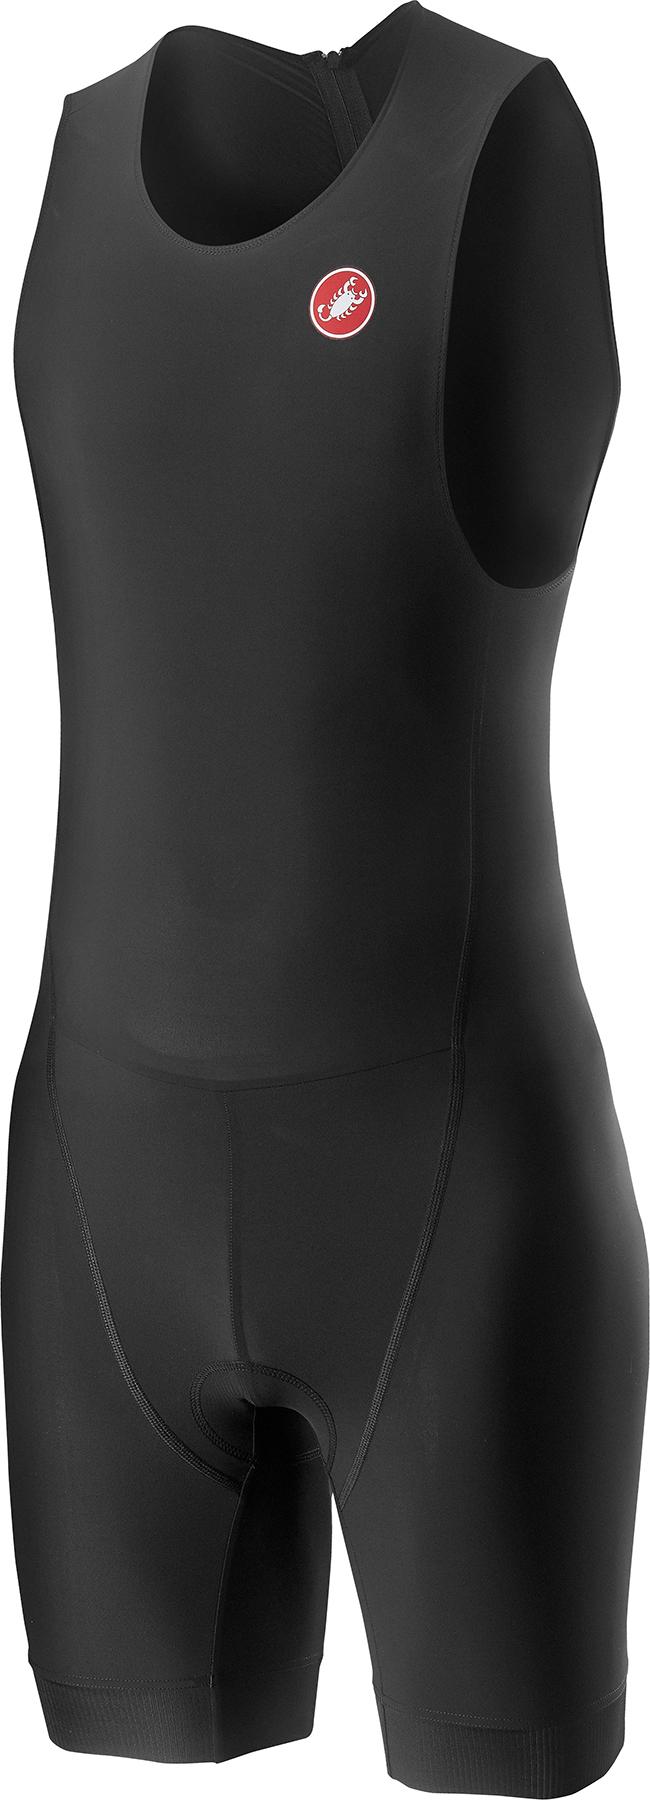 Castelli Core Spr-oly Suit - Black